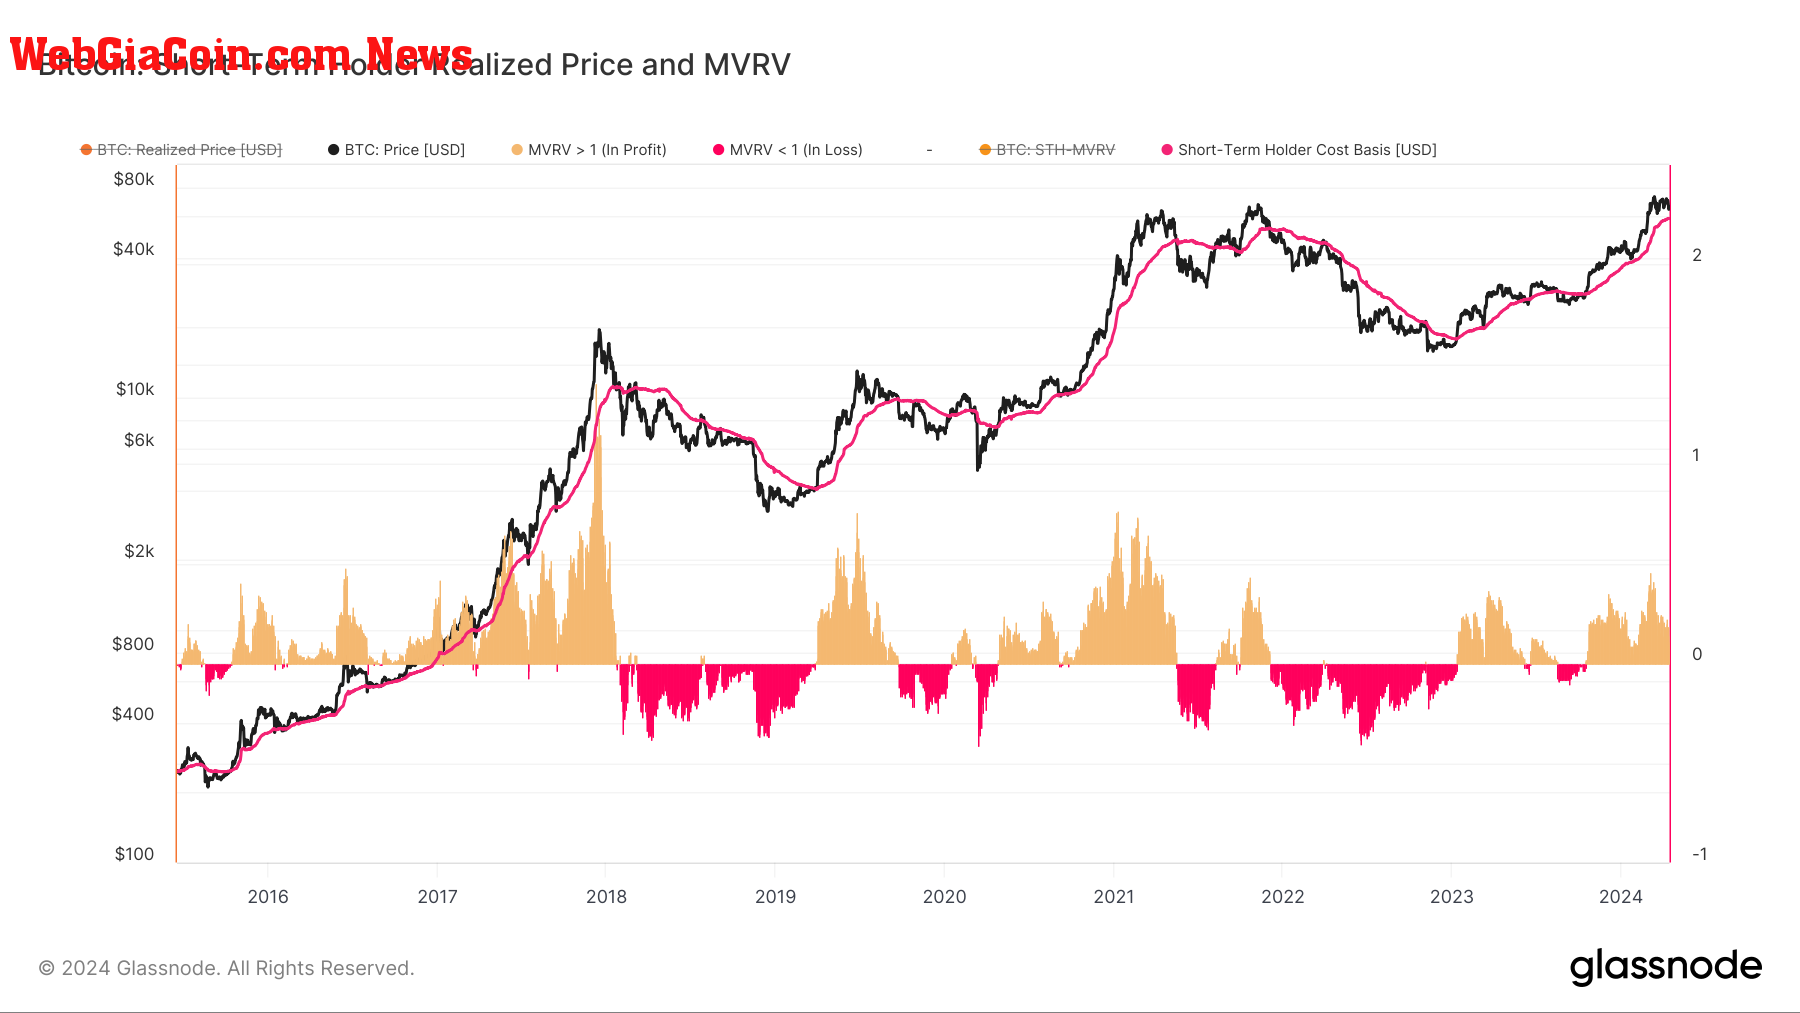 Short-Term Holder Realized Price and MVRV: (Source: Glassnode)